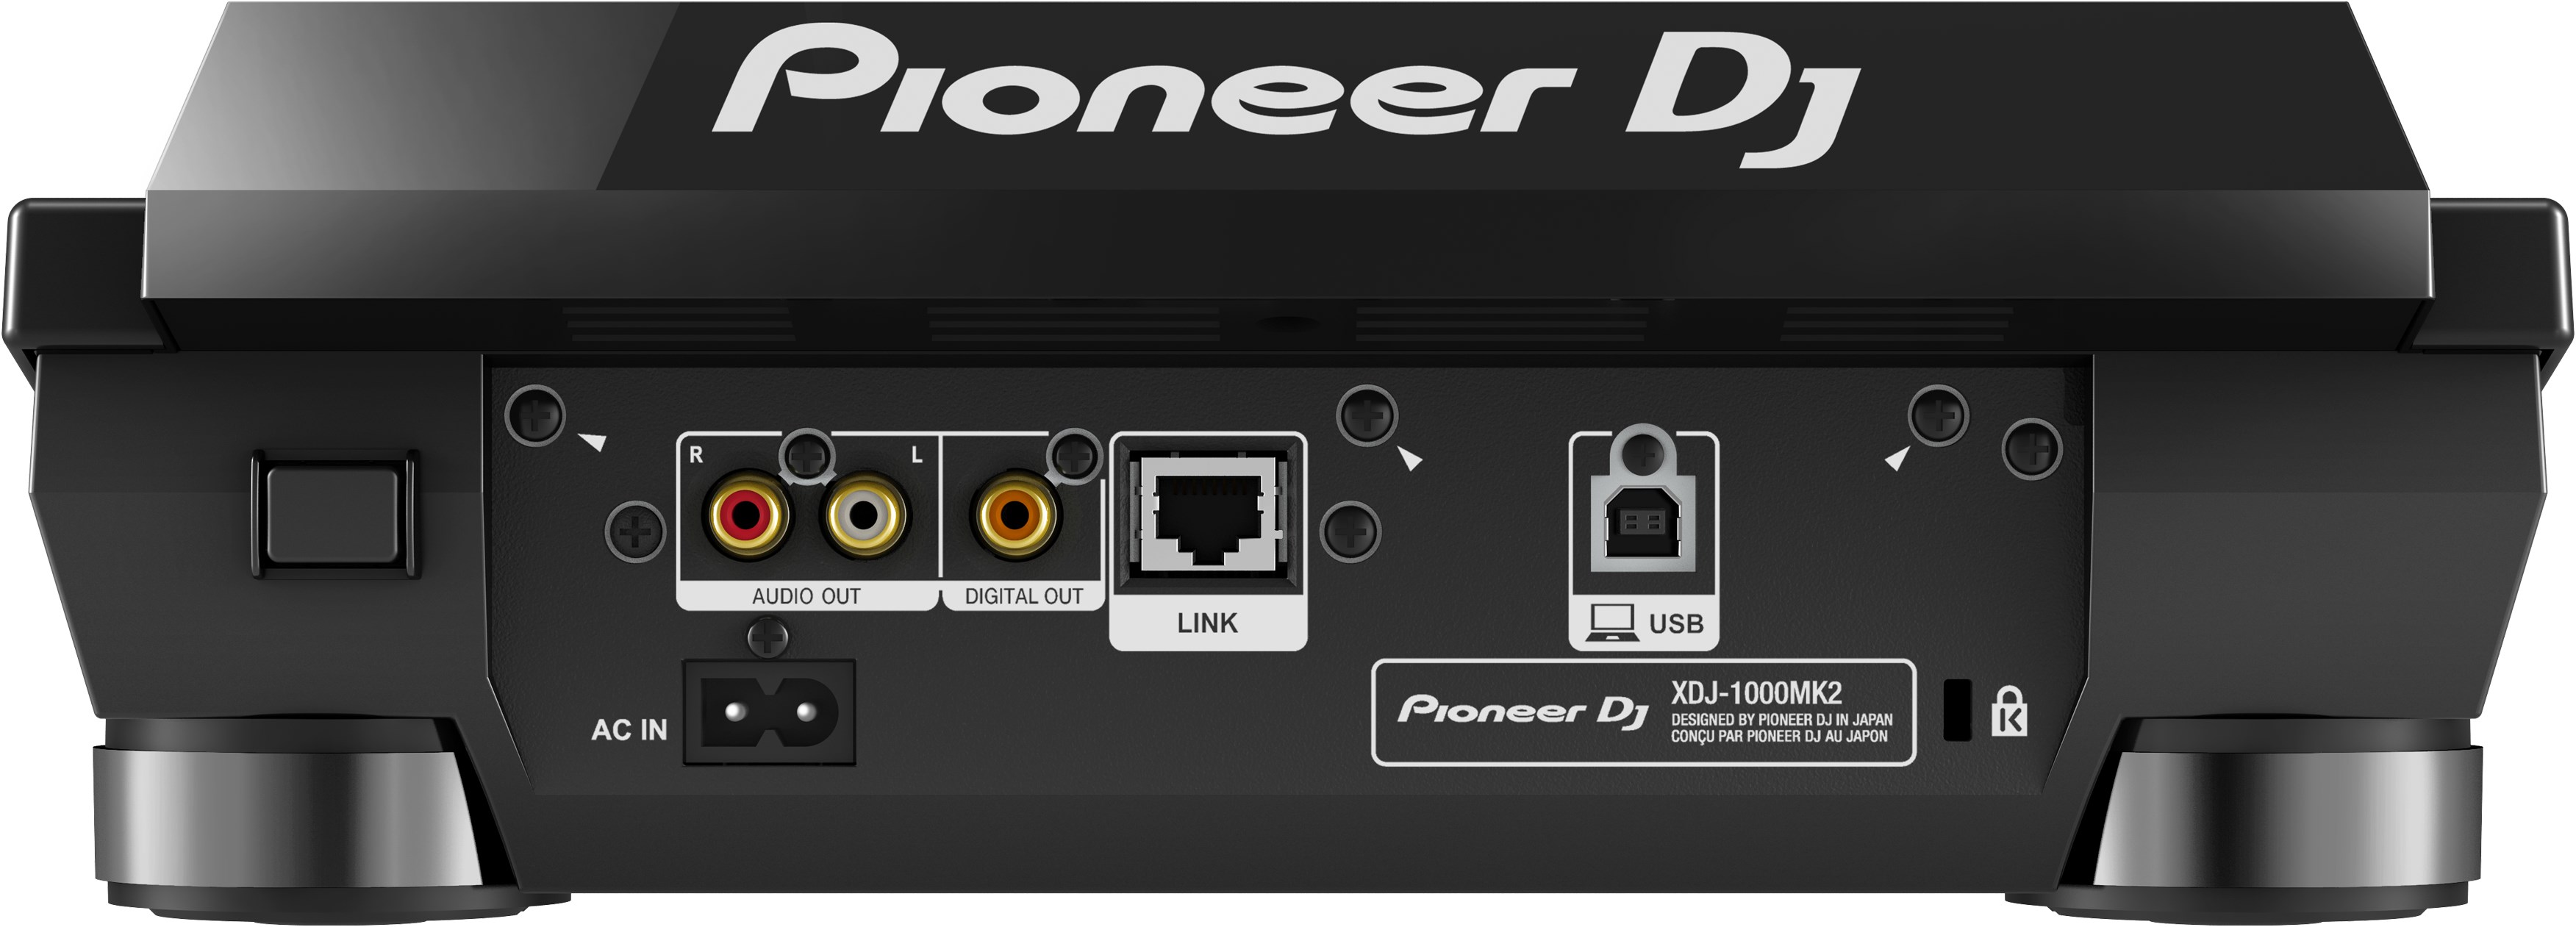 Pioneer Dj Xdj-1000mk2 - Plato MP3 & CD - Variation 2